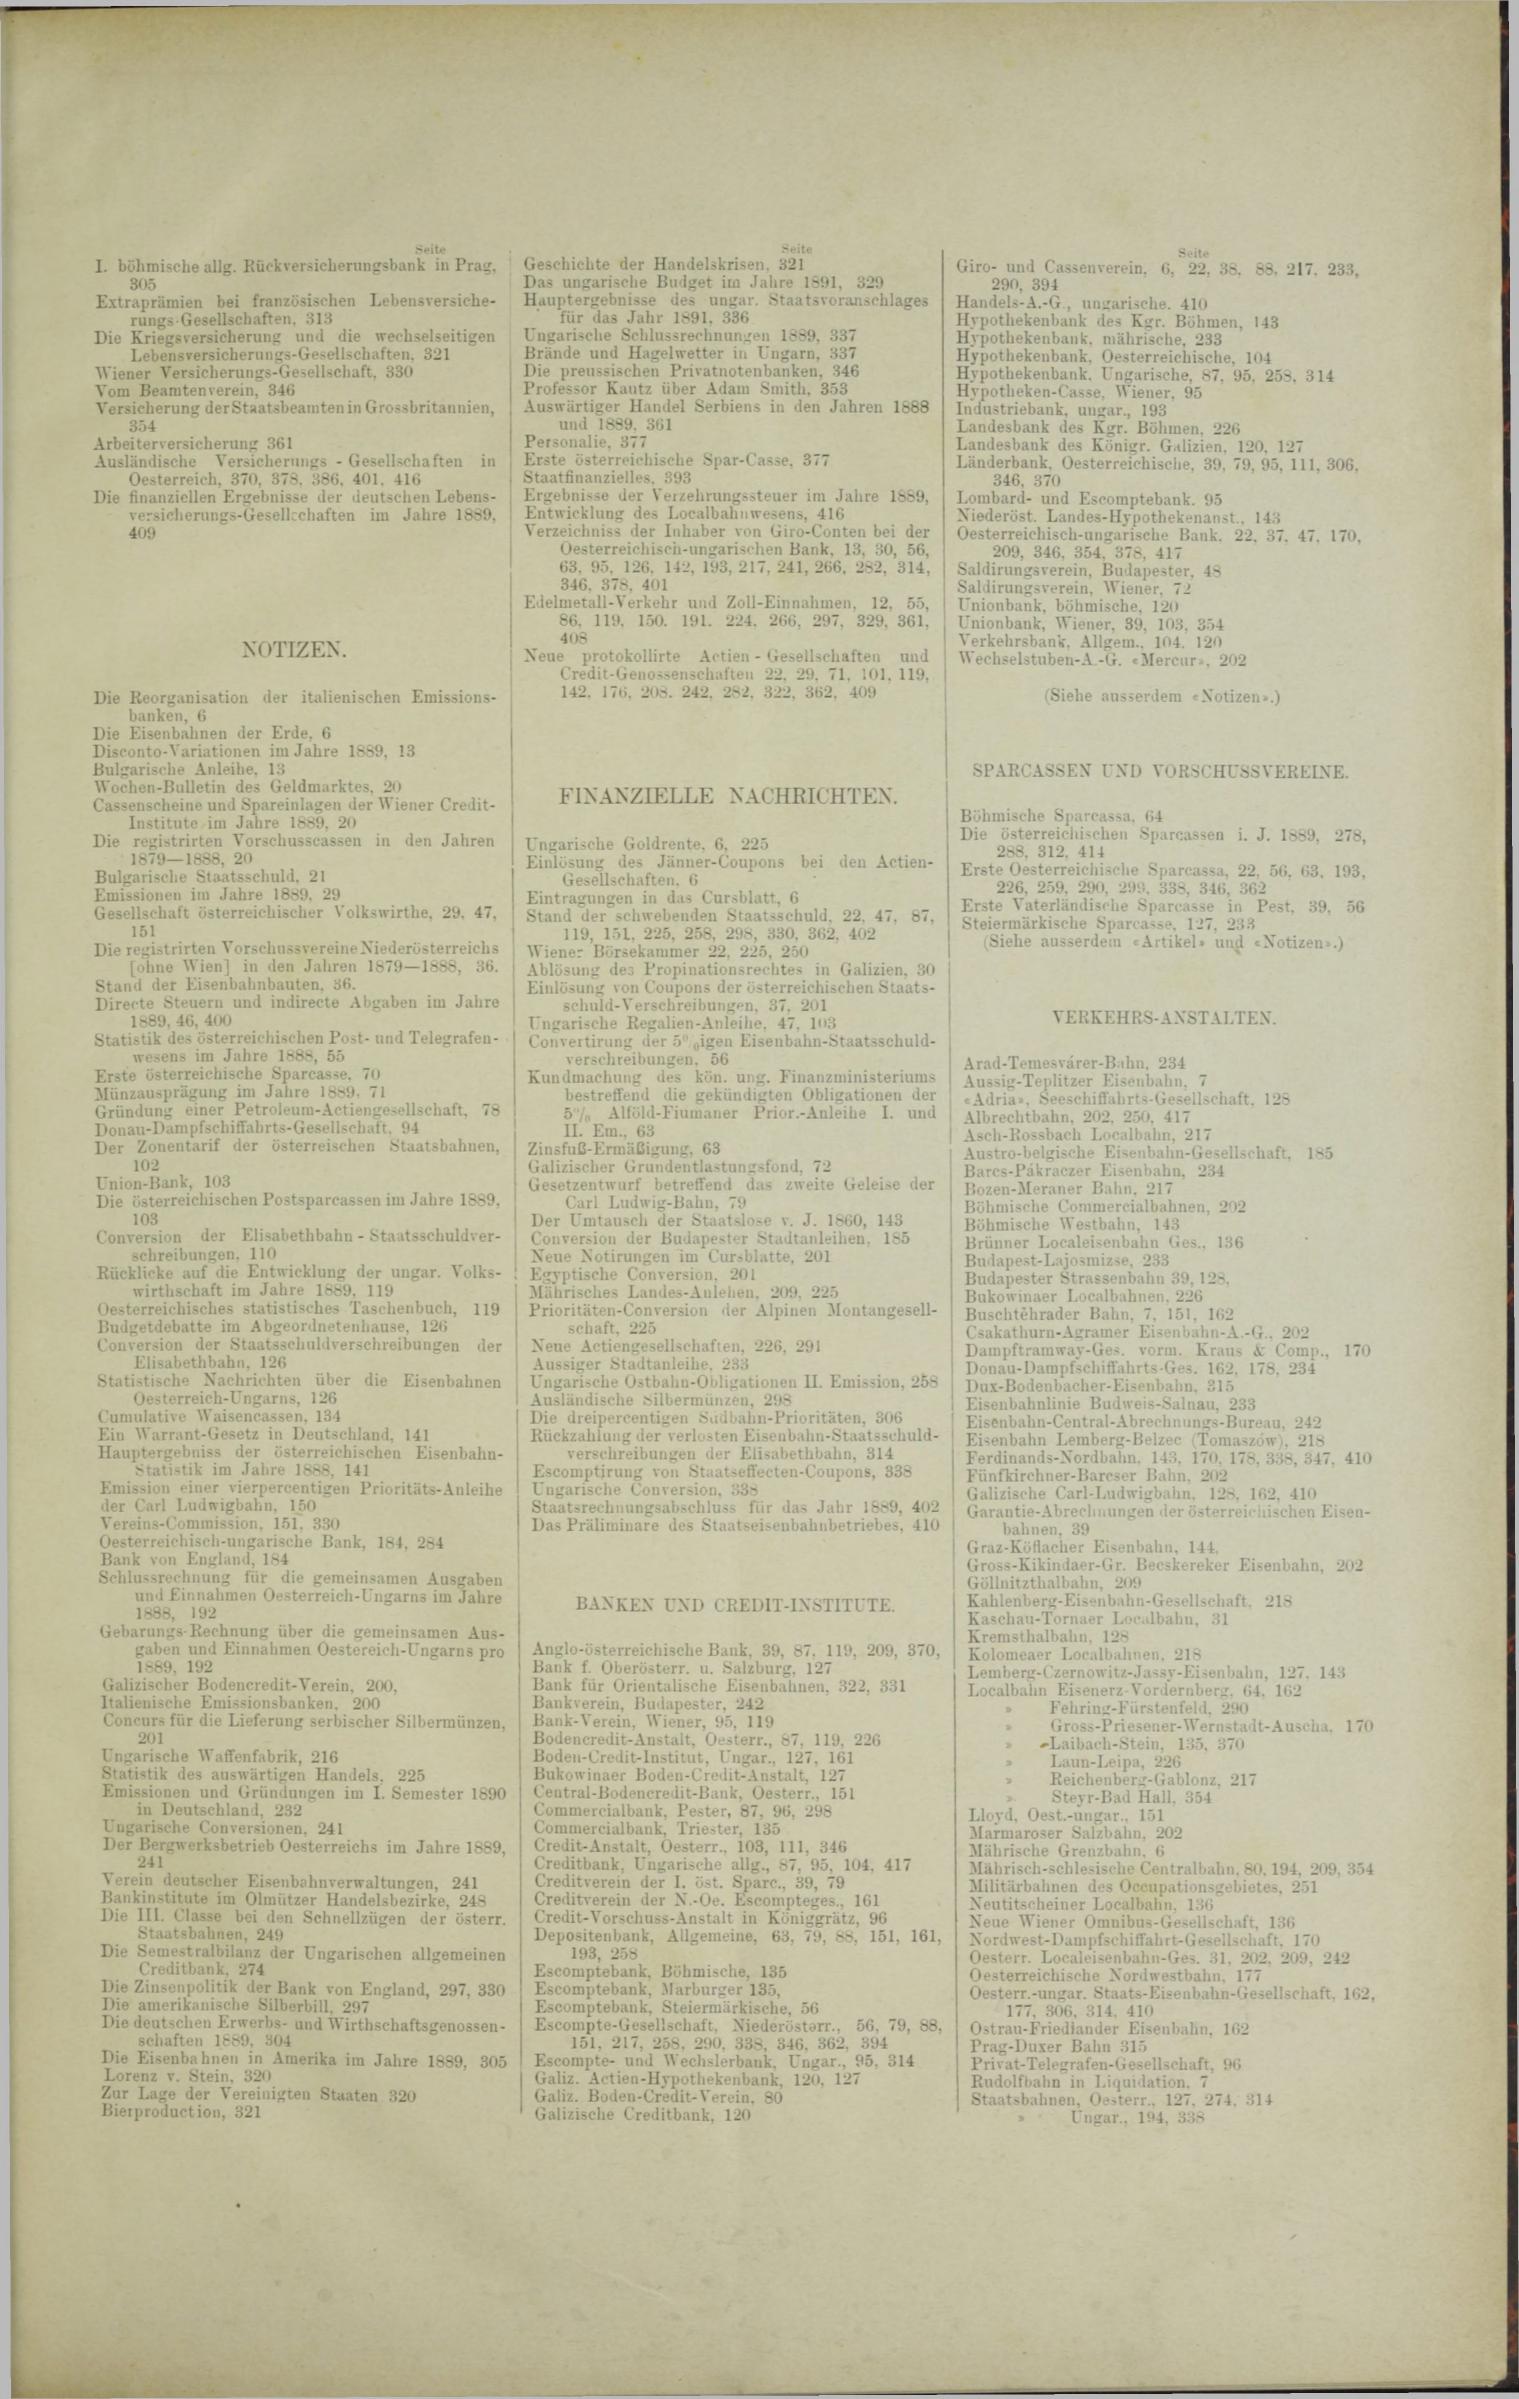 Der Tresor 06.03.1890 - Seite 11